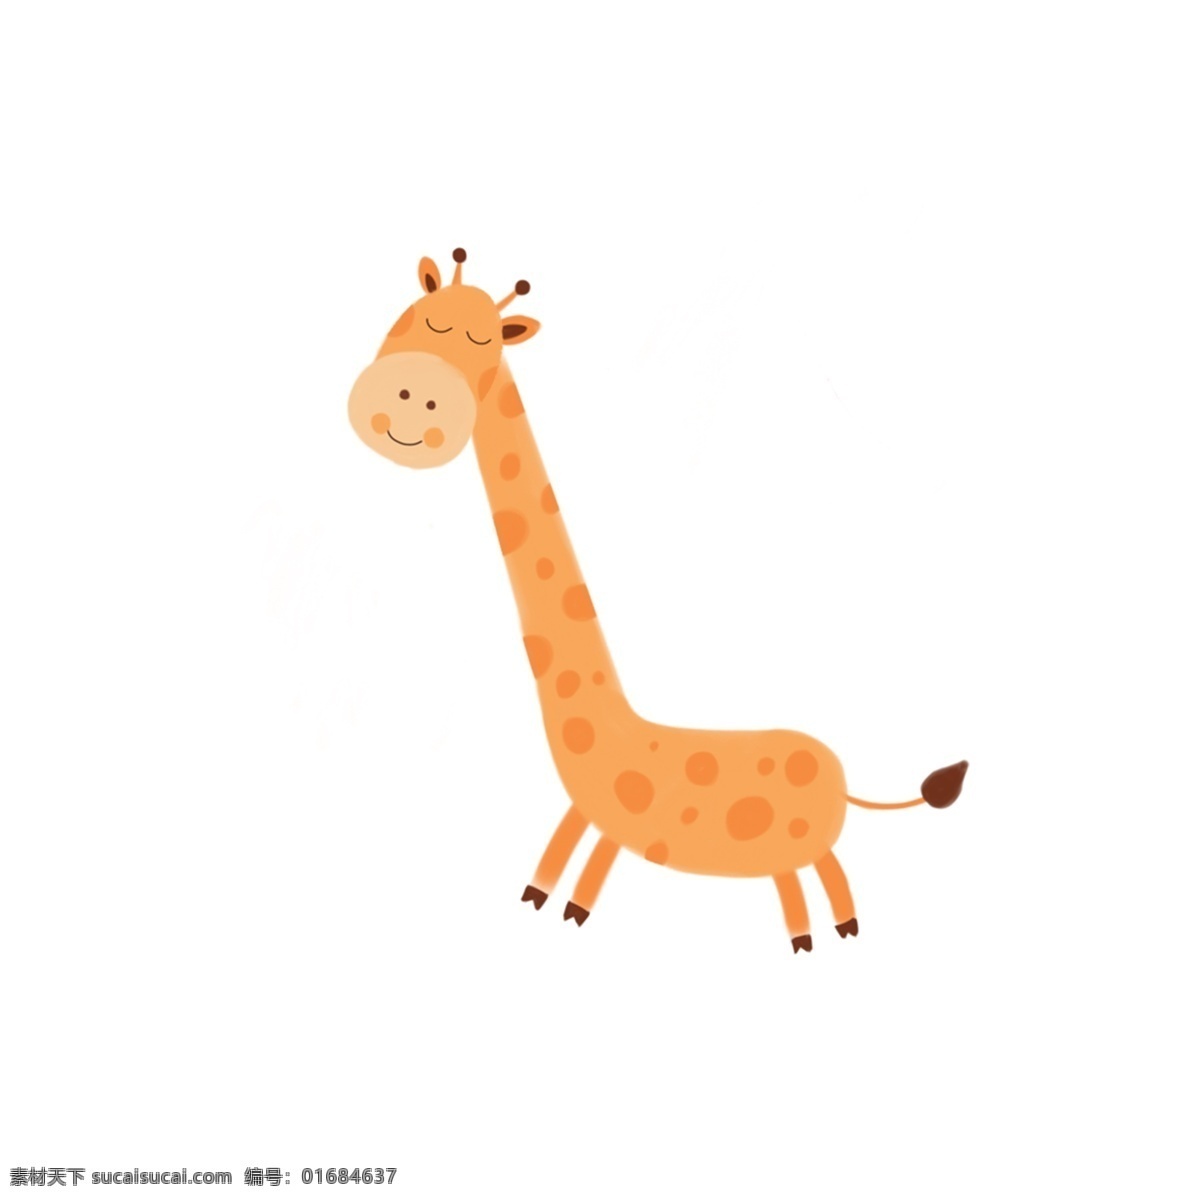 手绘 创意 简约 可爱 卡通 长颈鹿 动物 插画 小清新 动物插画